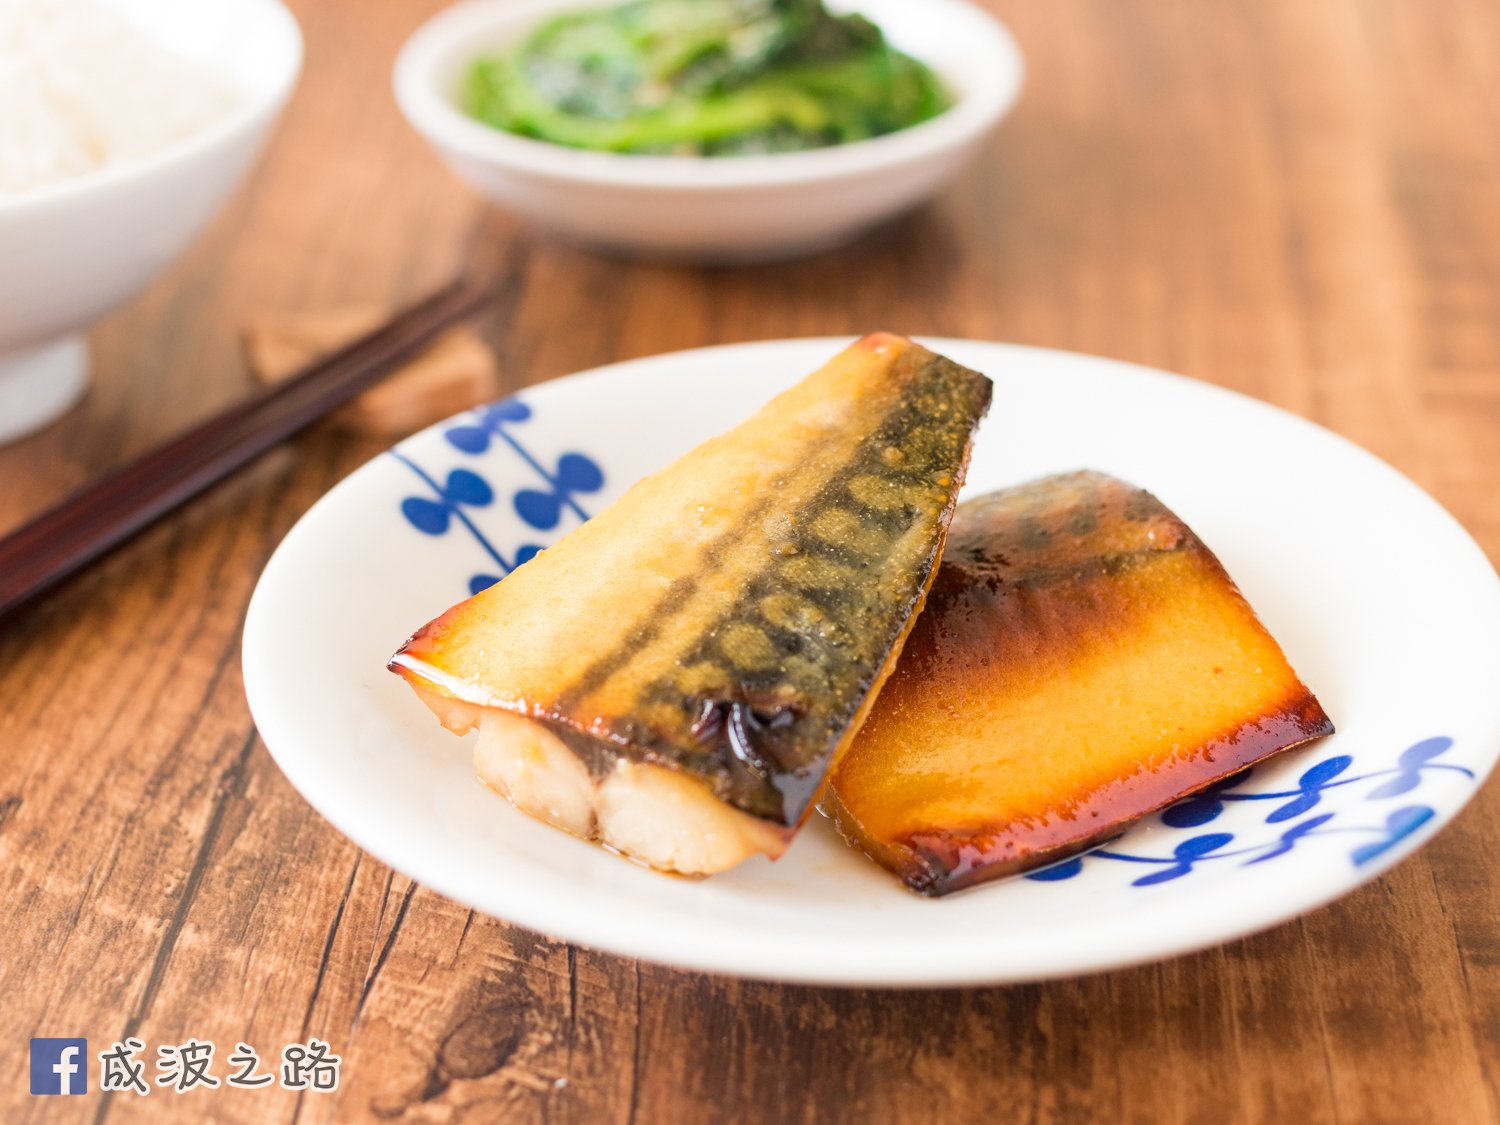 影片 簡易日式料理 味噌烤鯖魚食譜 做法 成波之路的cook1cook食譜分享